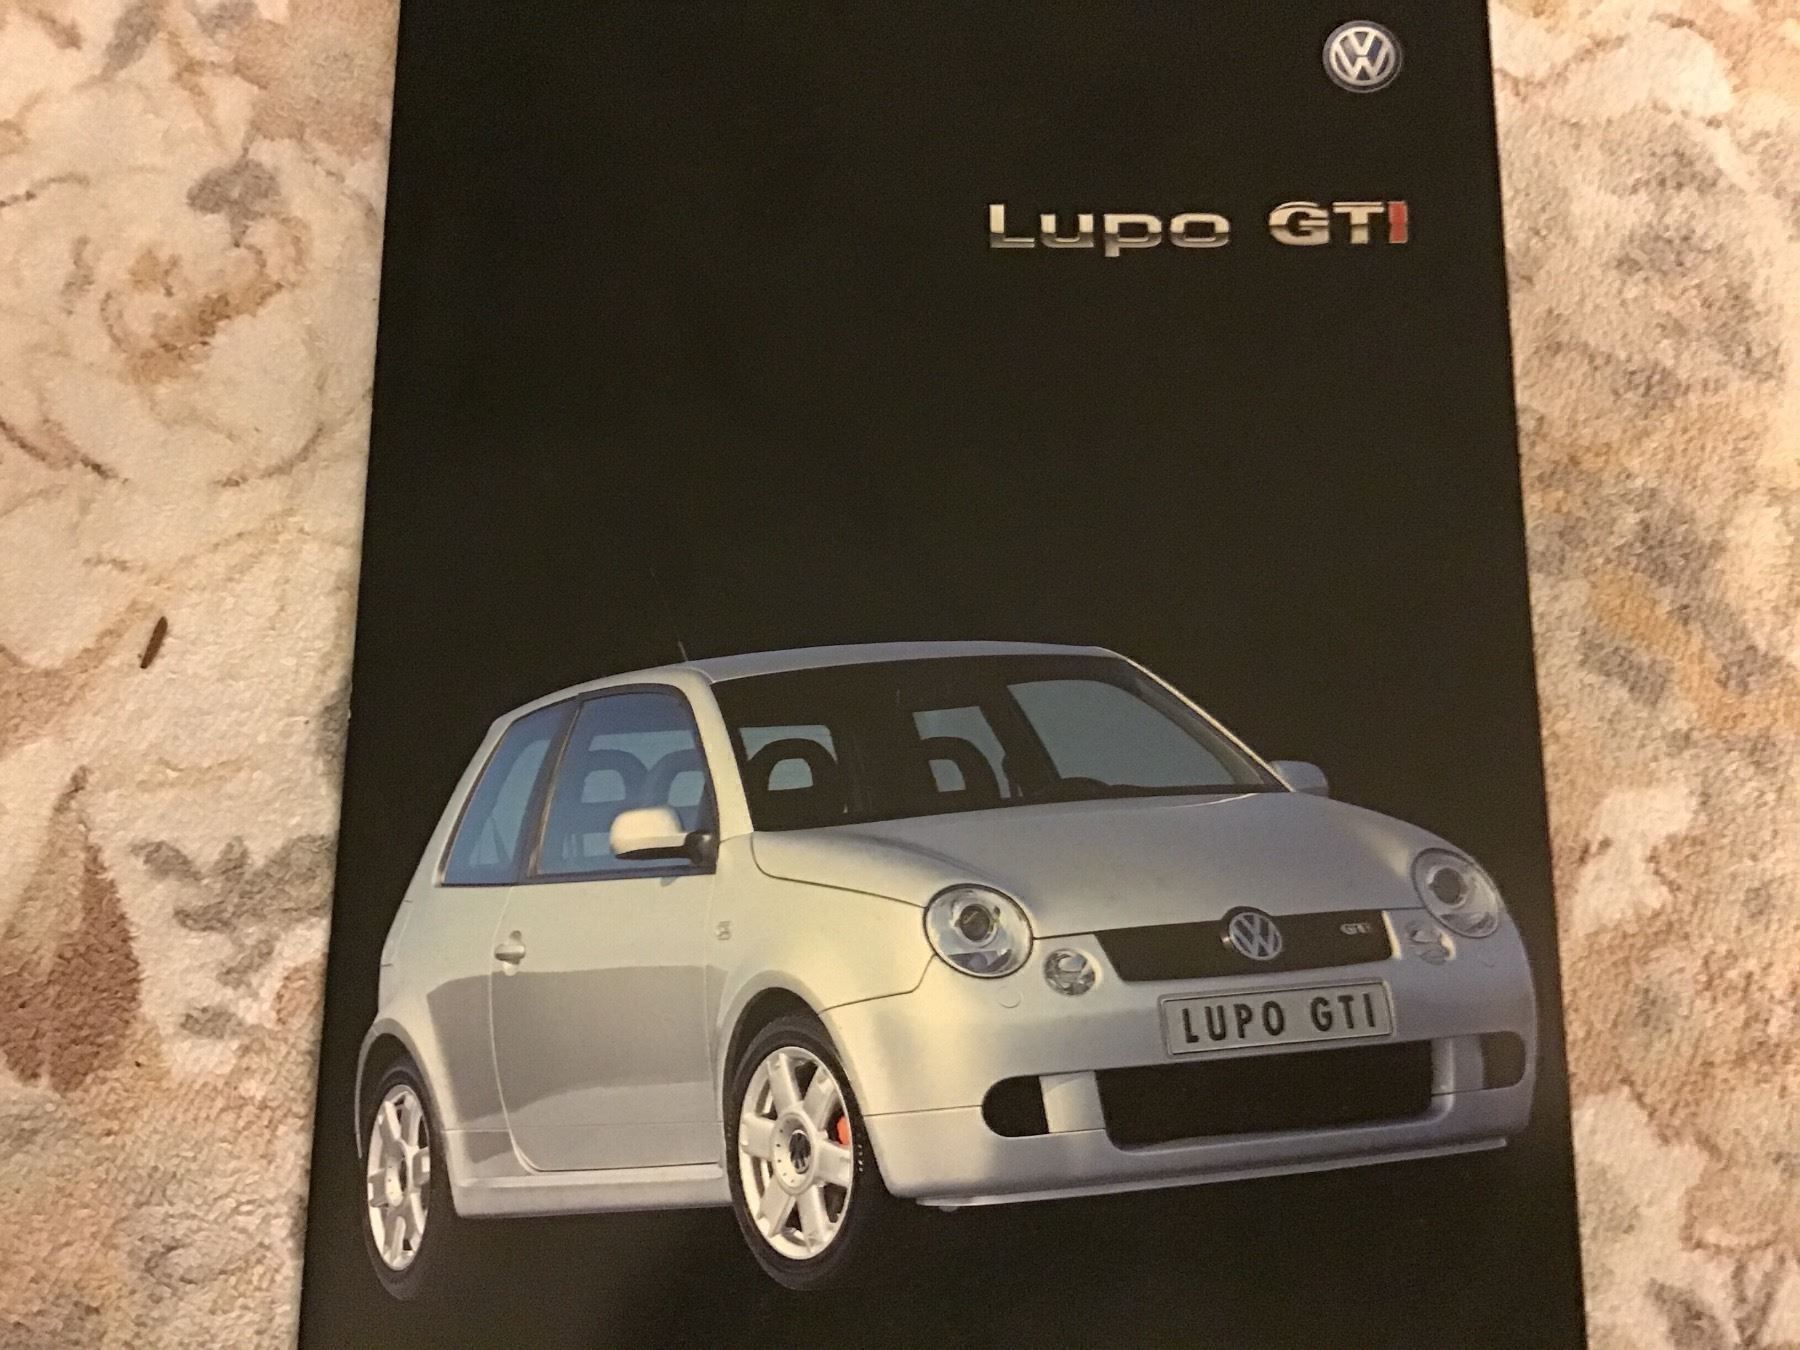 VW Lupo GTI Faltprospekt Mai 2001 kaufen auf Ricardo